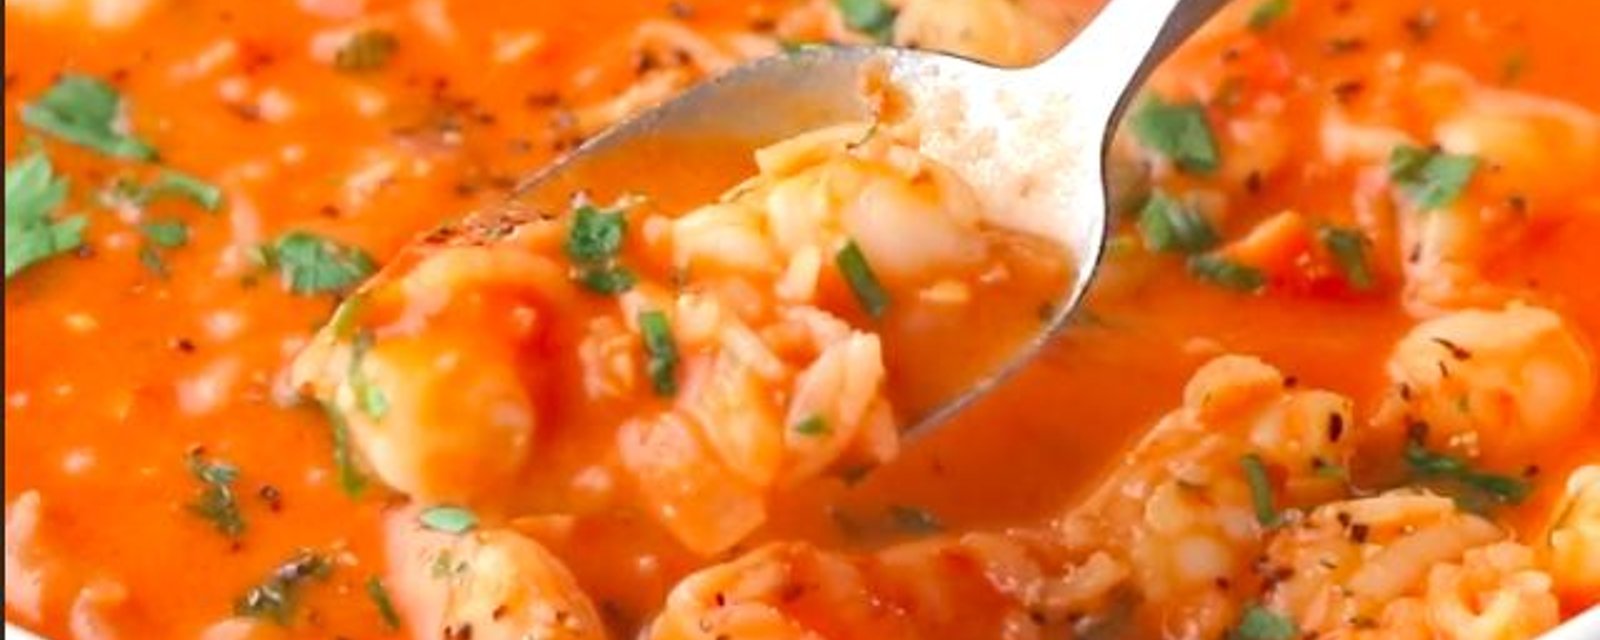 Soupe brésilienne aux crevettes prête en 10 minutes!